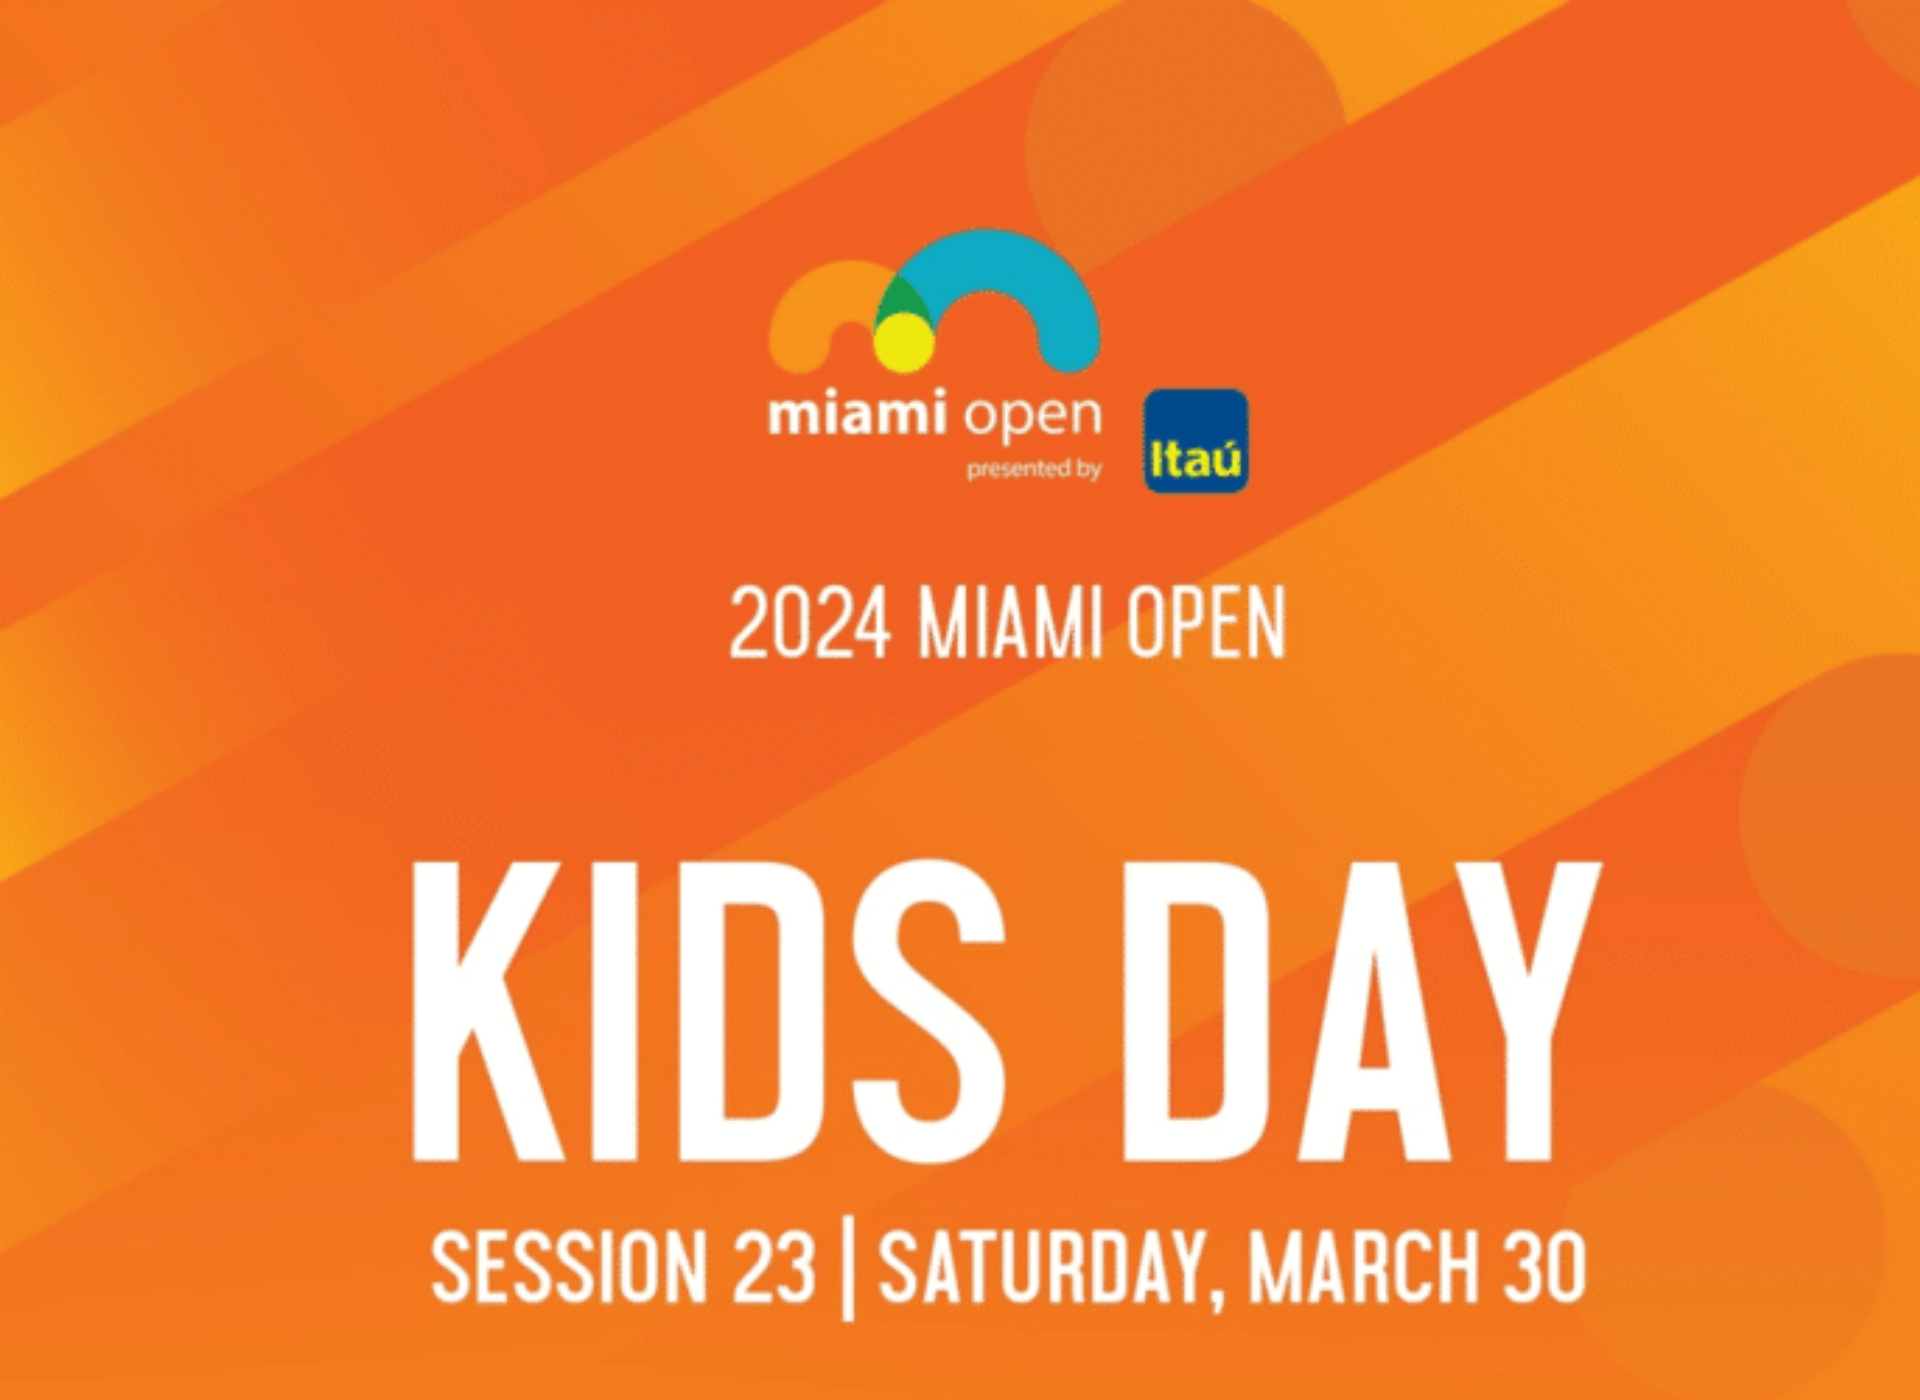 Miami Open - Kids Day - 2024